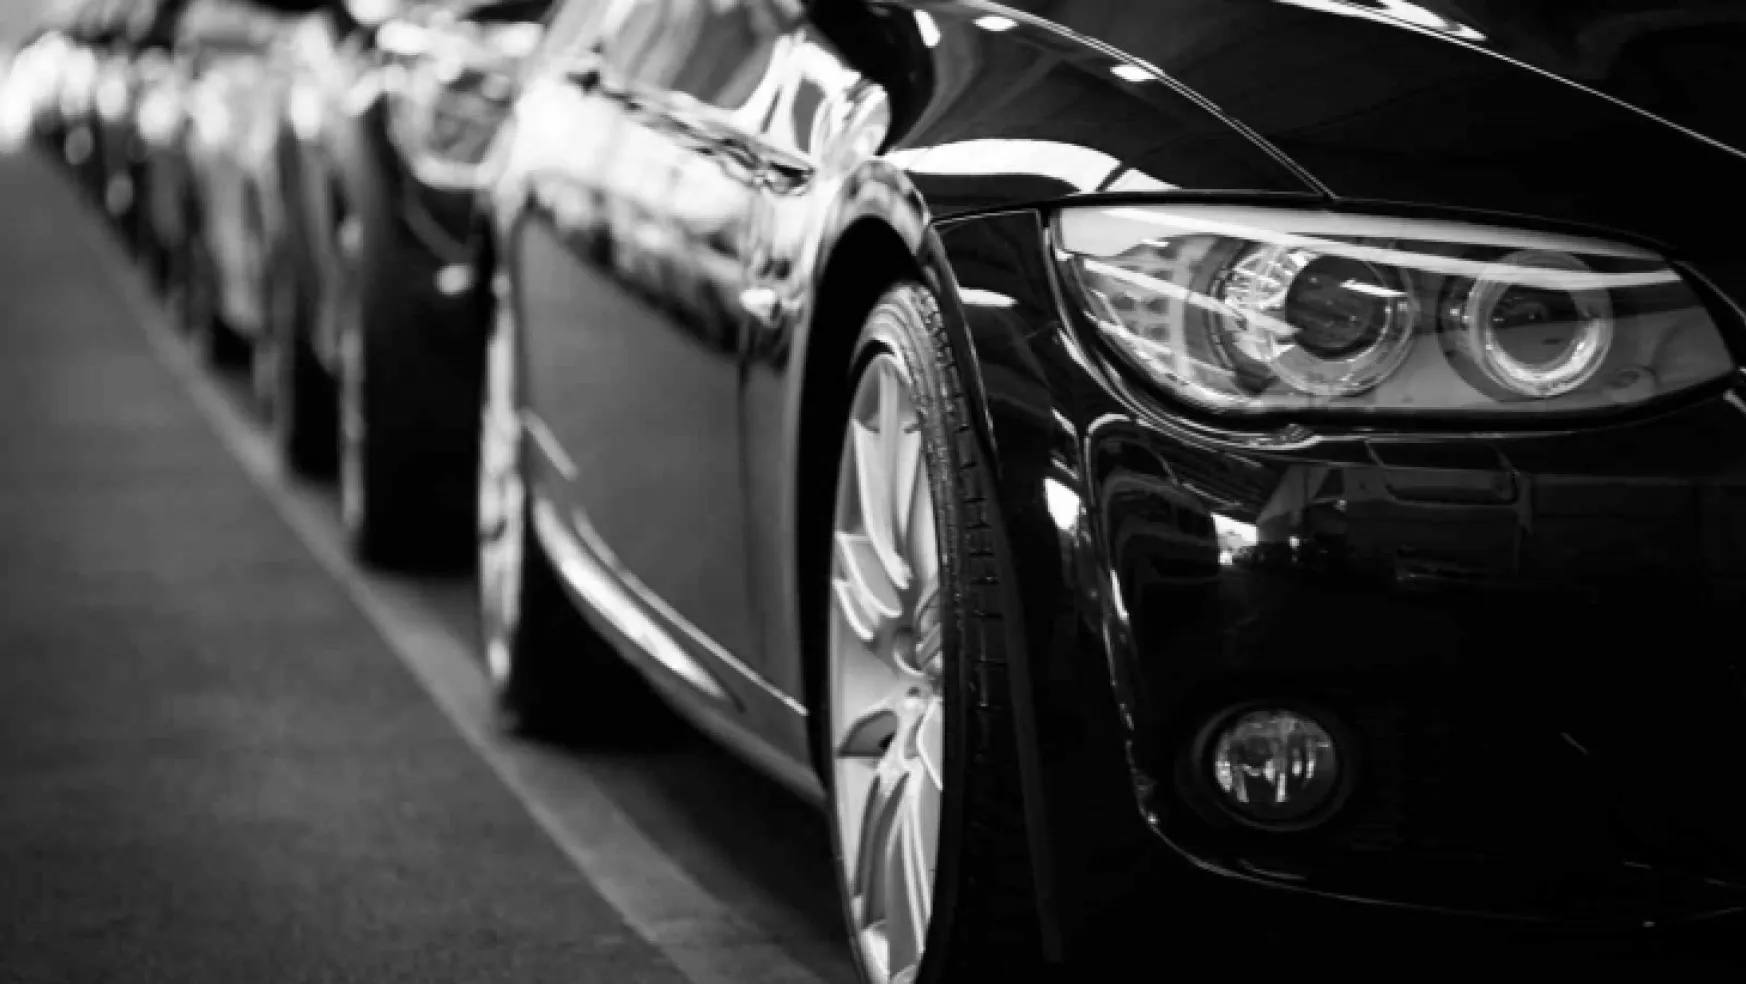 Otomobil satış rakamları açıklandı